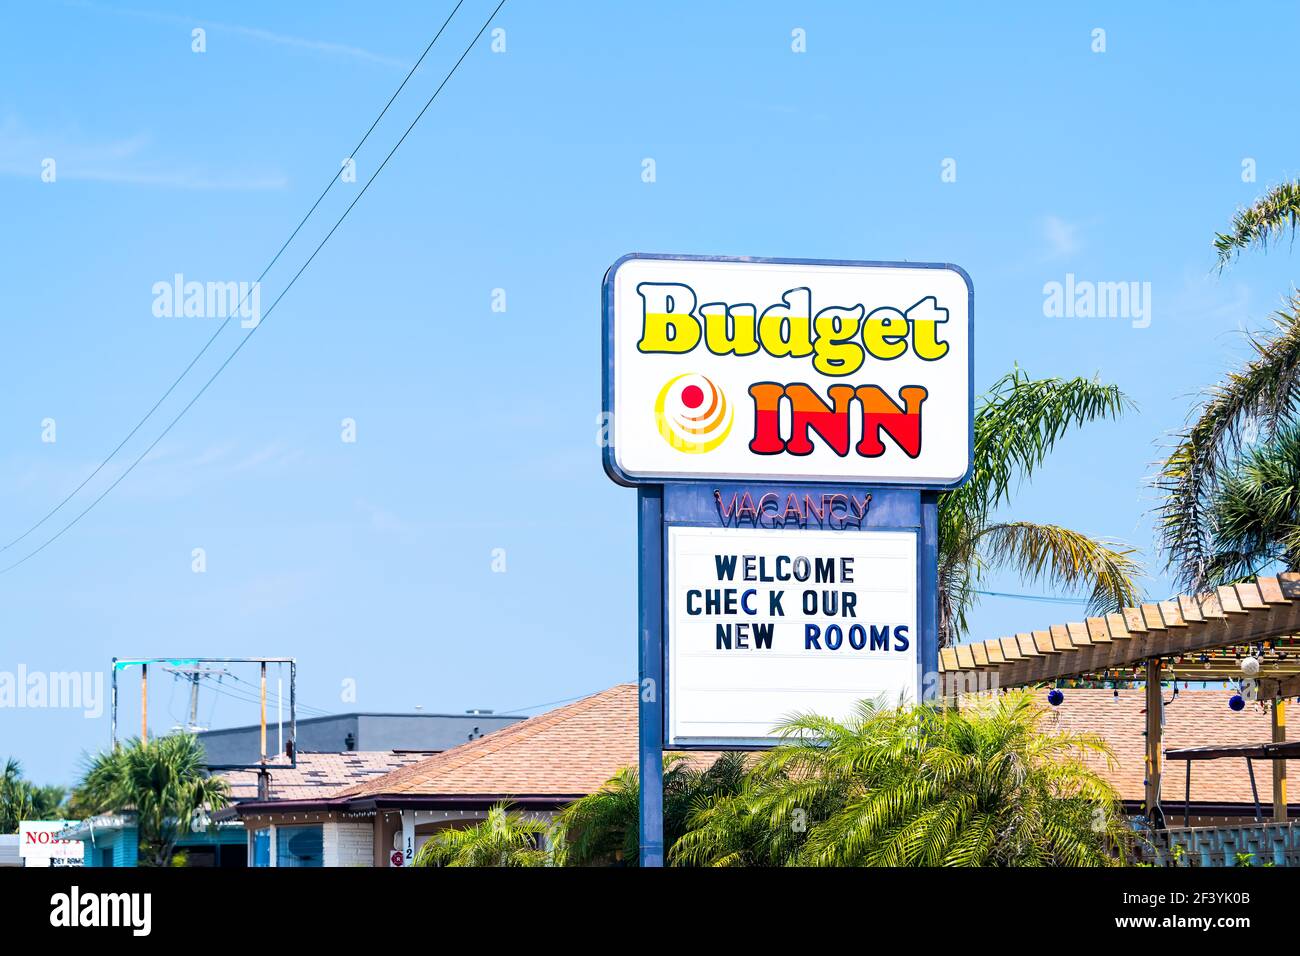 St. Augustine, Stati Uniti d'America - 10 maggio 2018: Cartello Budget Inn hotel motel sulla città tropicale dell'isola della Florida in estate con annuncio per la vacanza e le nuove camere Foto Stock